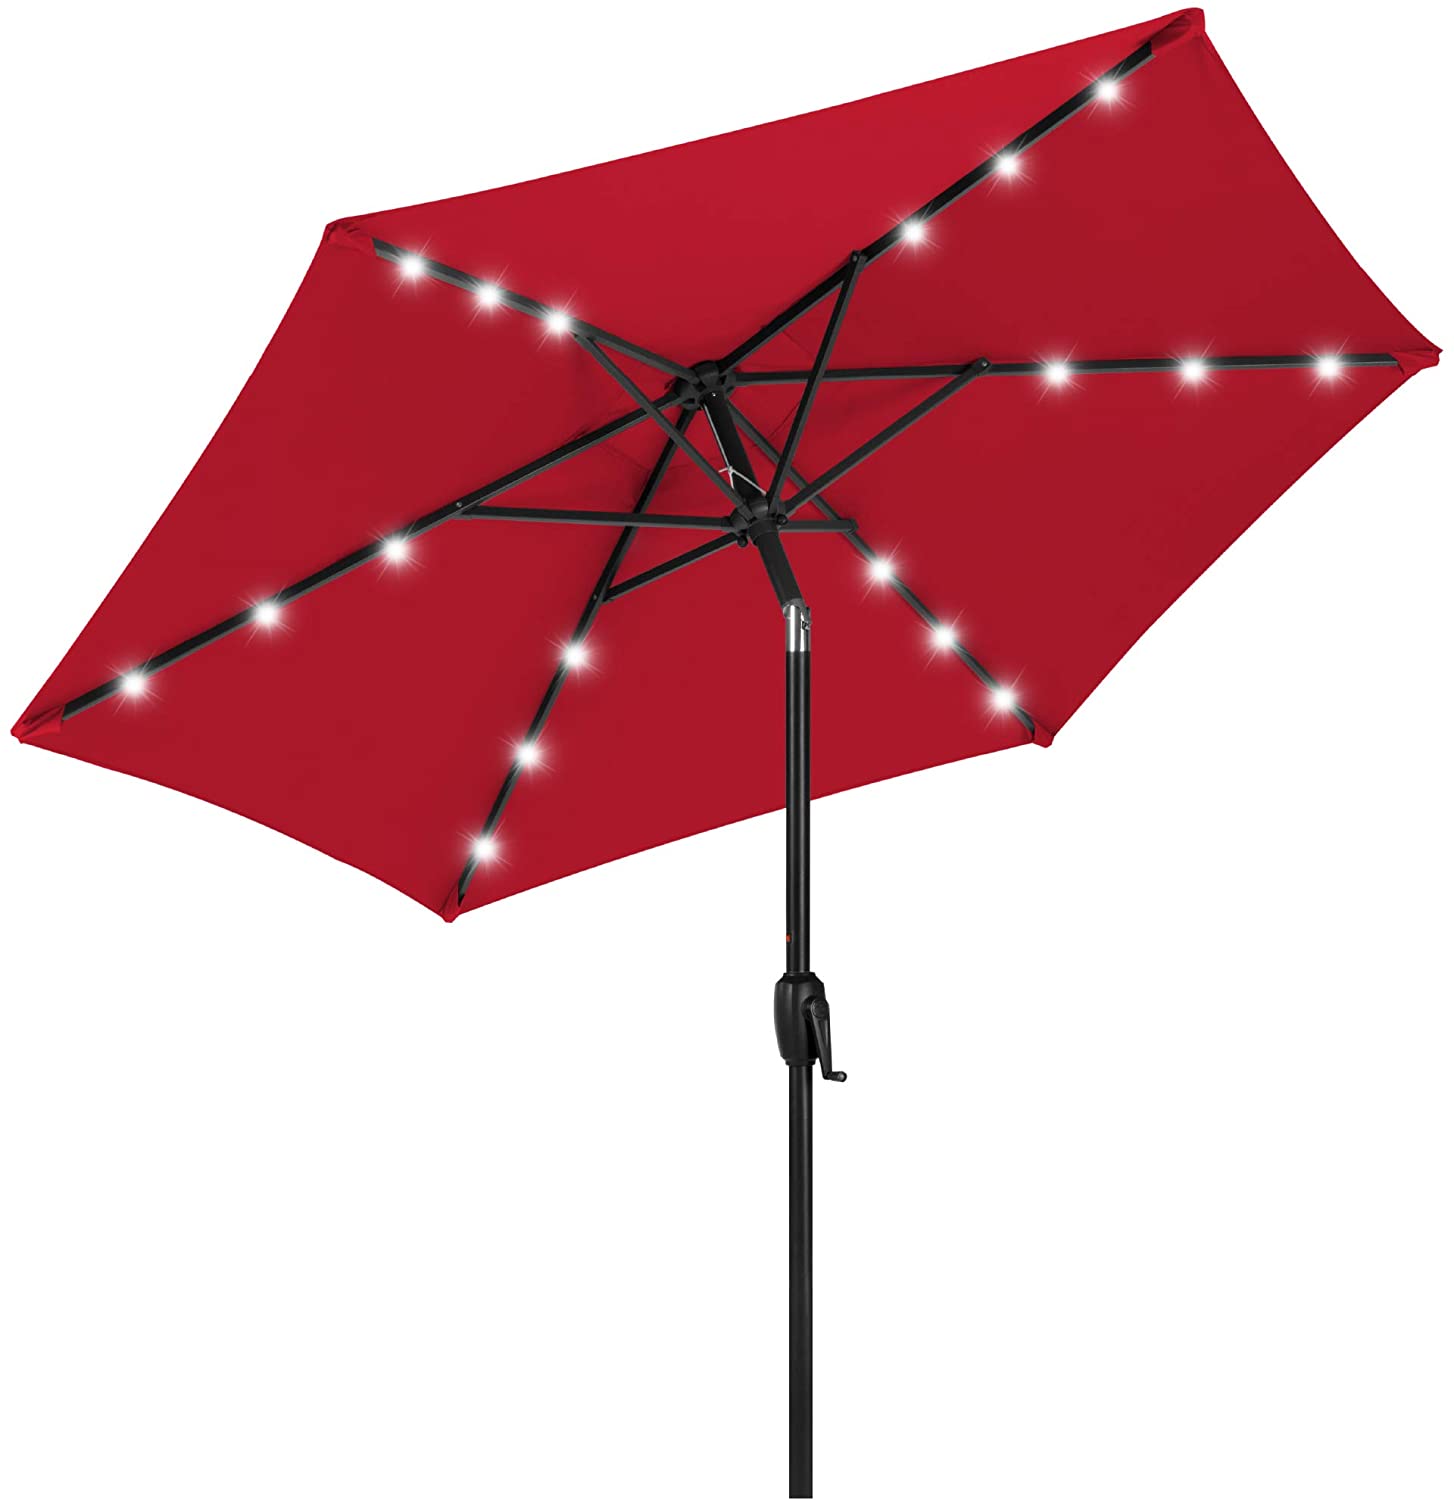 The Best Solar Patio Umbrella, Best Solar Led Patio Umbrella